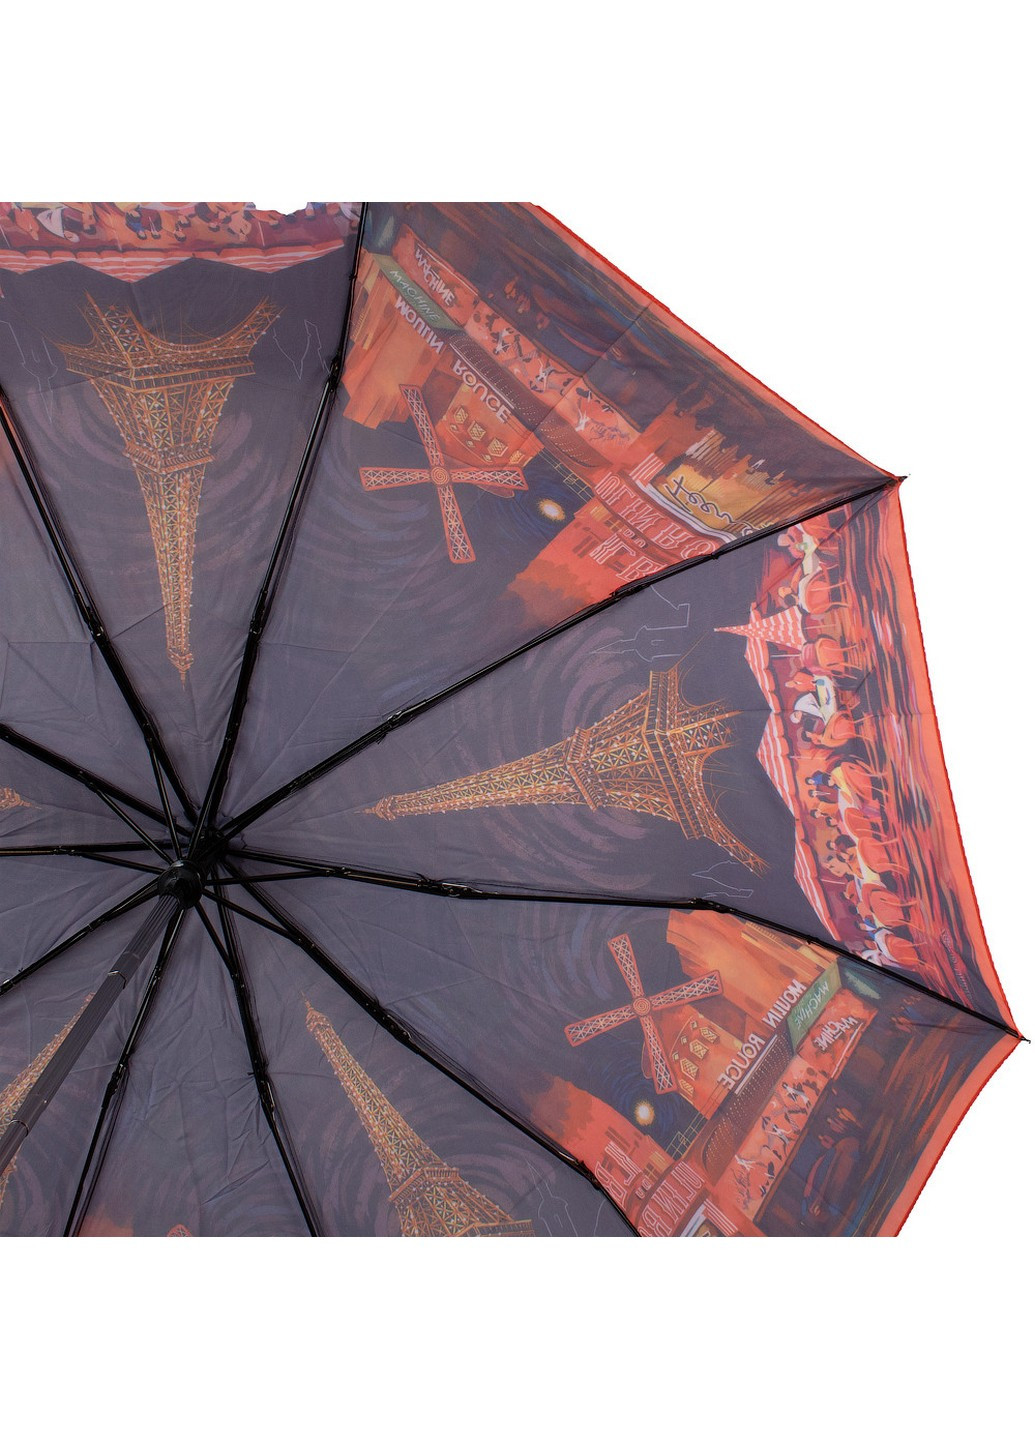 Зонт женский полуавтомат 100 см Zest (255374981)